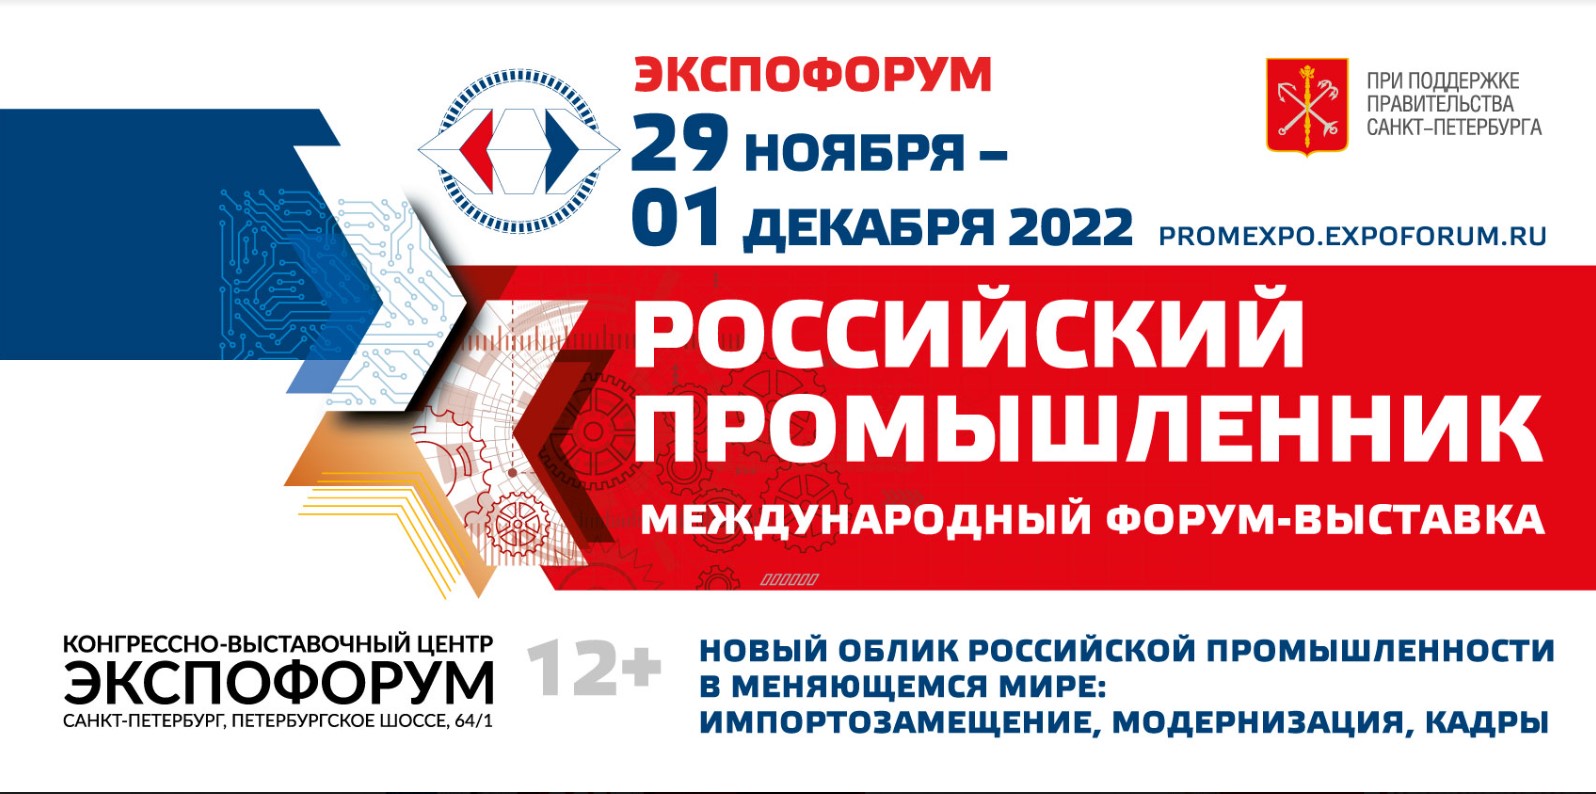 Международный форум-выставка «Российский промышленник» пройдет в Санкт-Петербурге